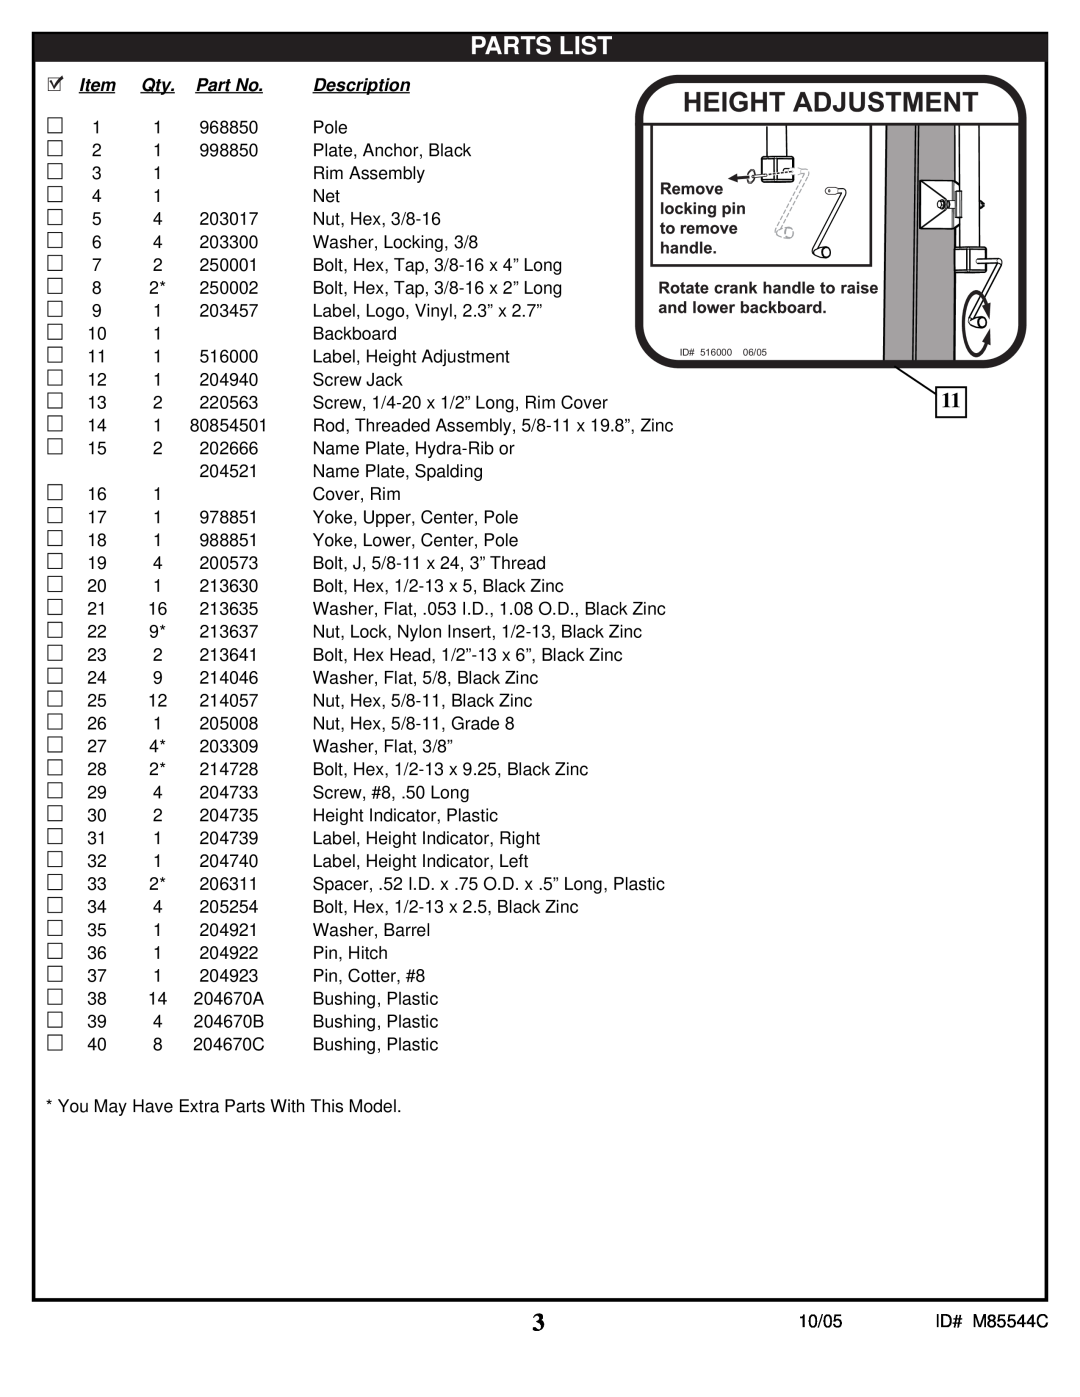 Spalding M85544C manual Parts List, Description 